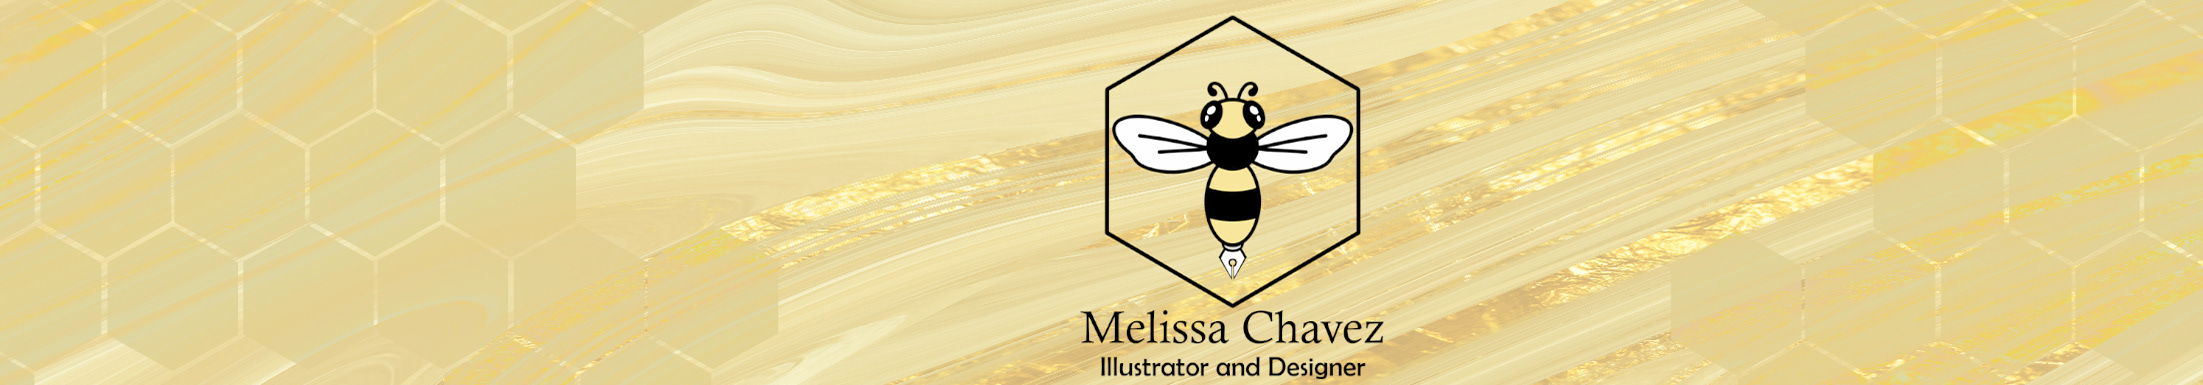 Melissa Chavez profil başlığı